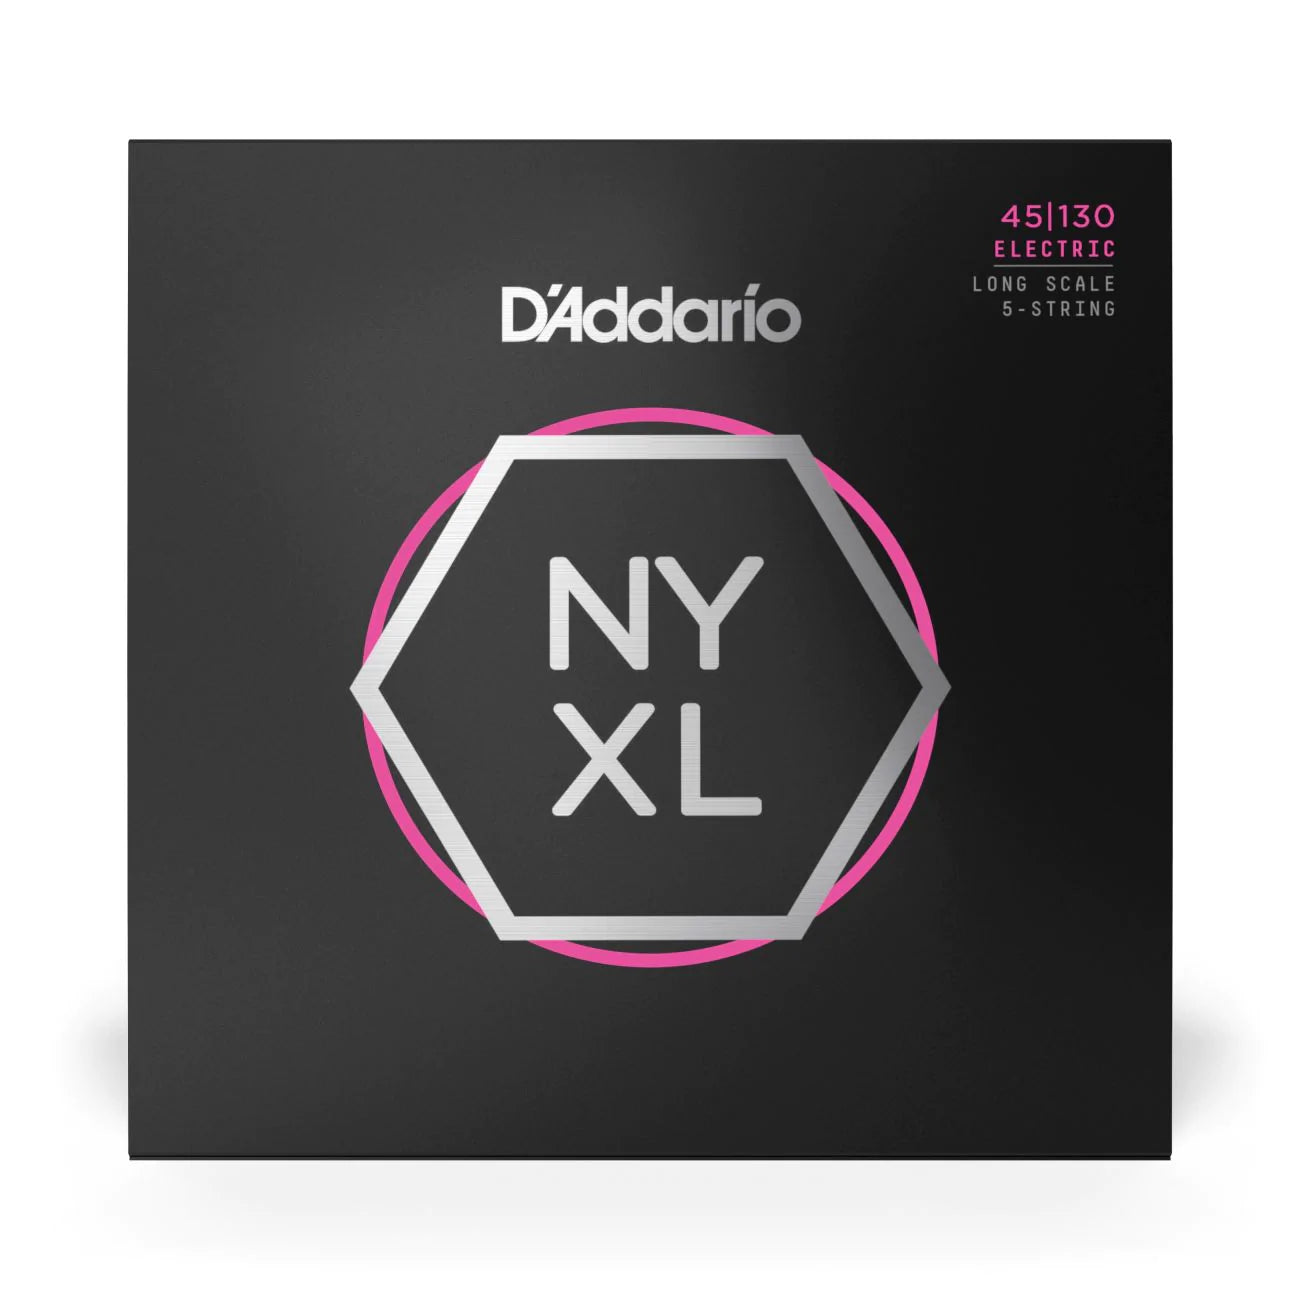 D'Addario NYXL45130 | NYXL Nickel Wound Bass Strings 45-130 Gauge | Regular Light | 5-String